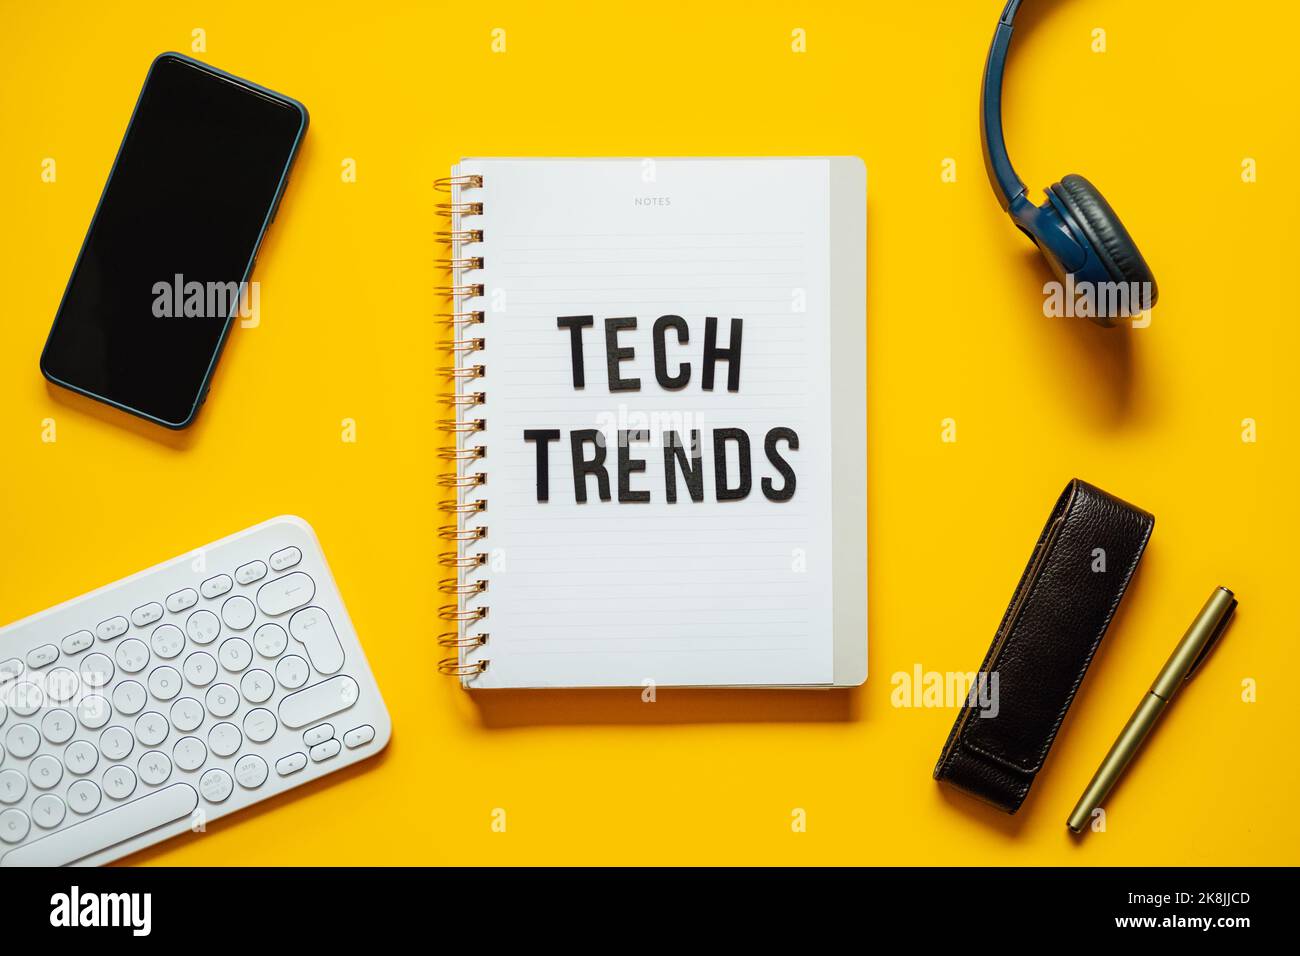 Tech-Trends, Top-Trends für neue Technologien. Worttrends auf offenem Notizblock mit verschiedenen Gadgets und Geräten auf gelbem Hintergrund. Stockfoto